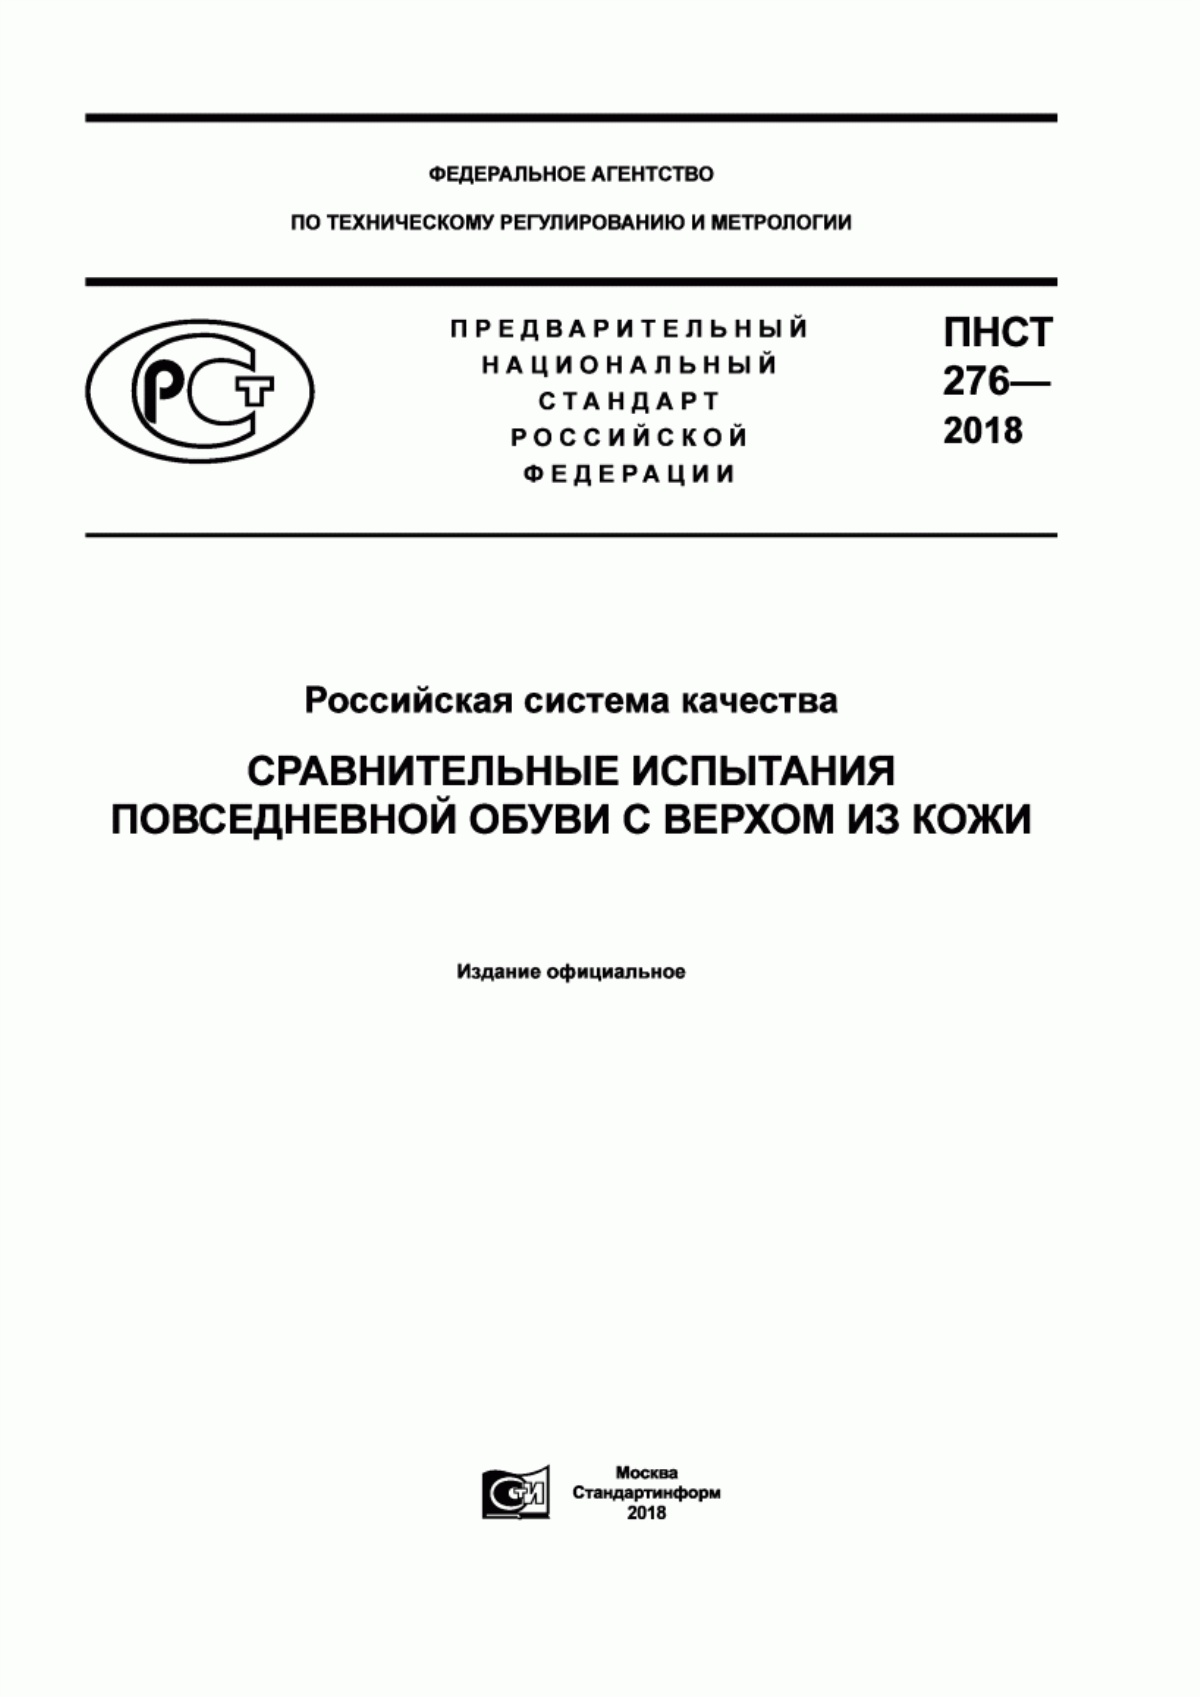 ПНСТ 276-2018 Российская система качества. Сравнительные испытания повседневной обуви с верхом из кожи